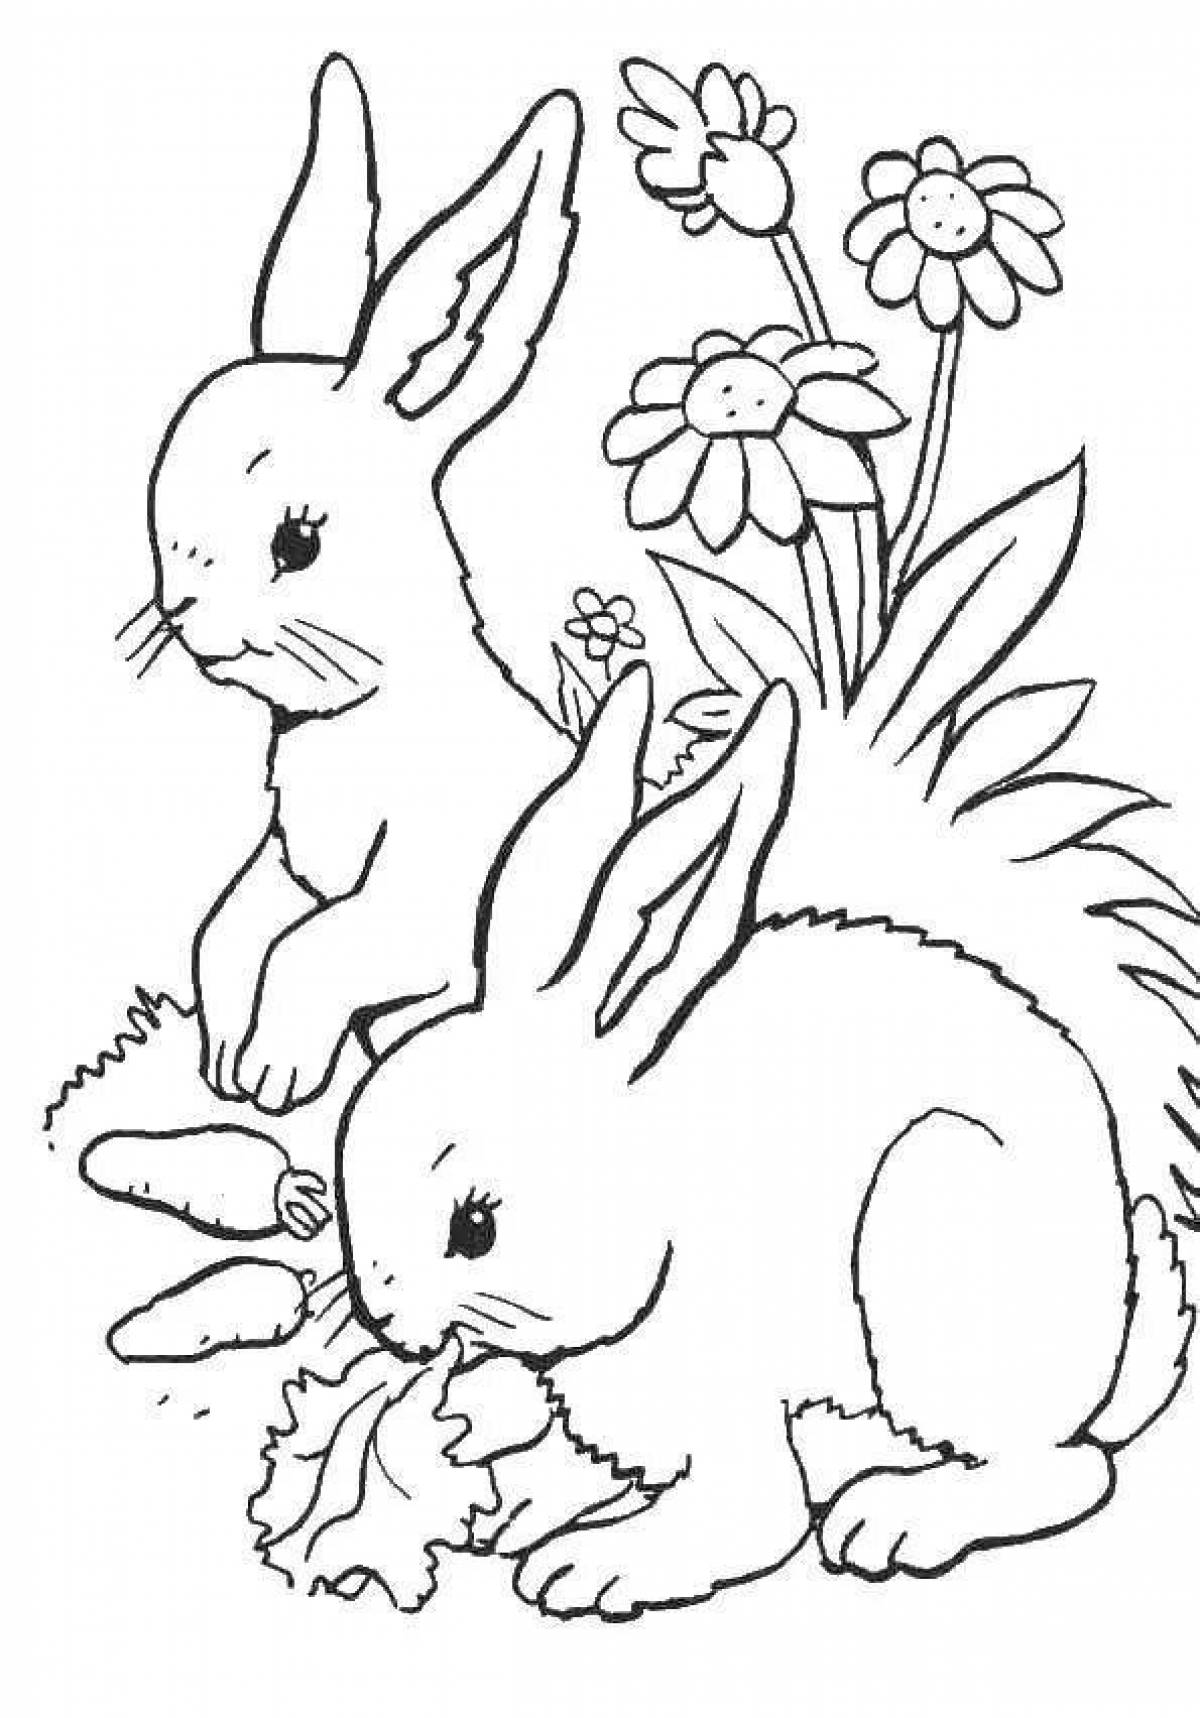 Inspiring rabbit coloring book